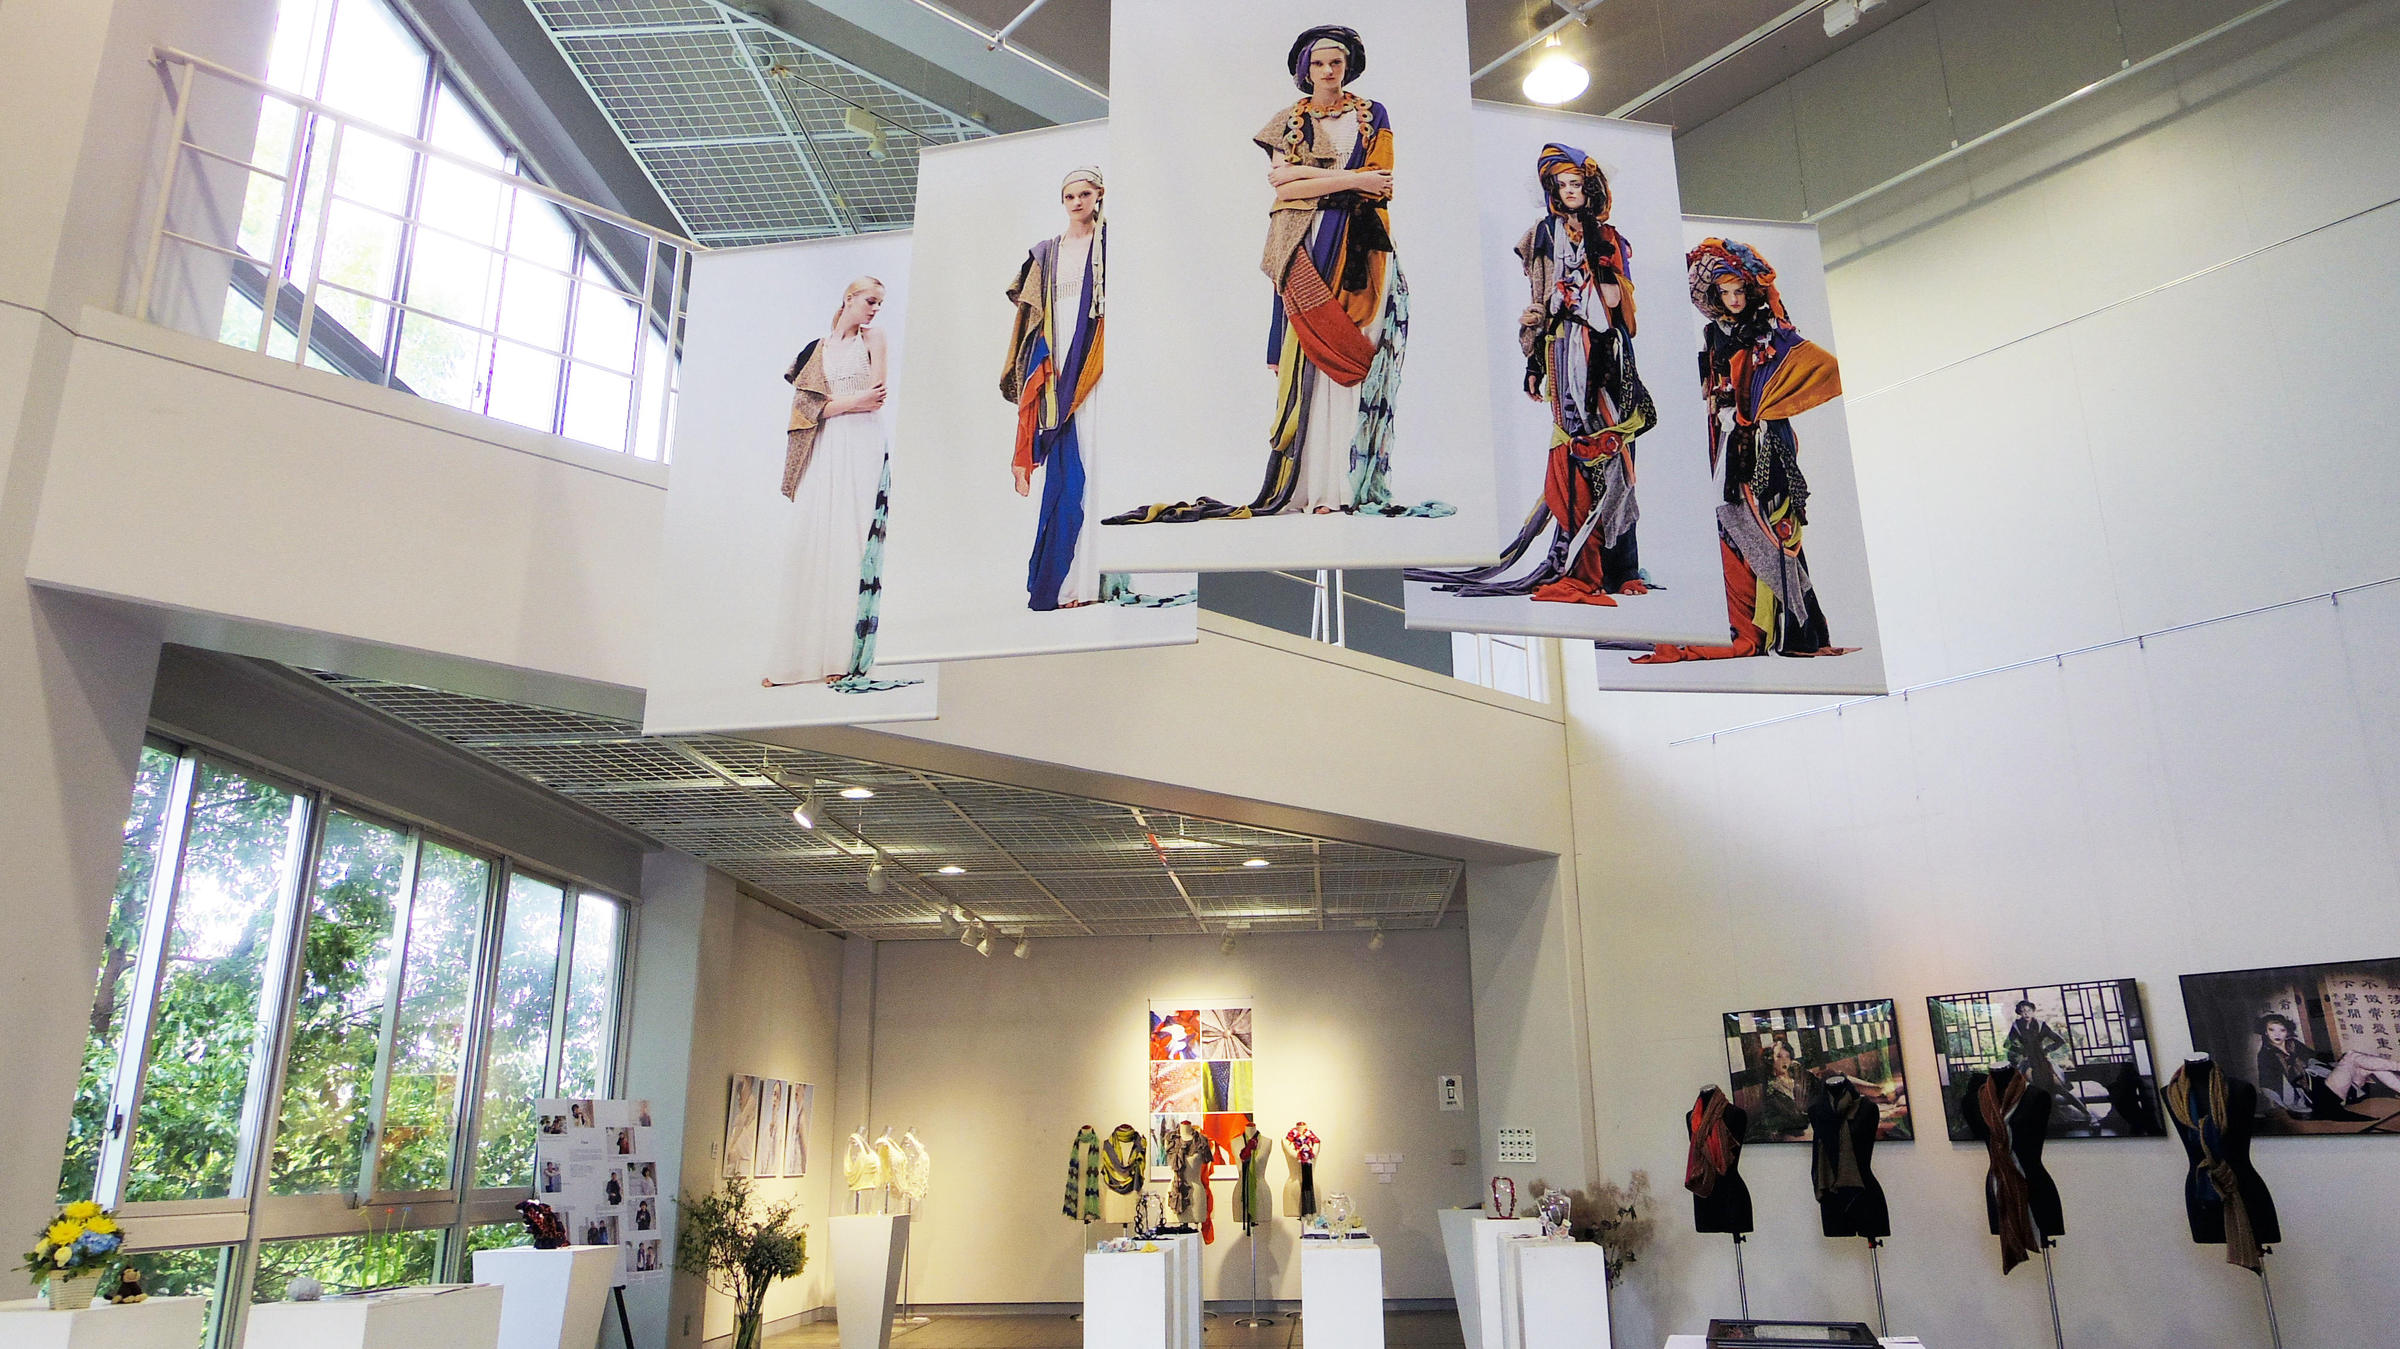 Exhibition view of “KYOKO NAGASAWA ─ Knit & Textile Designer”